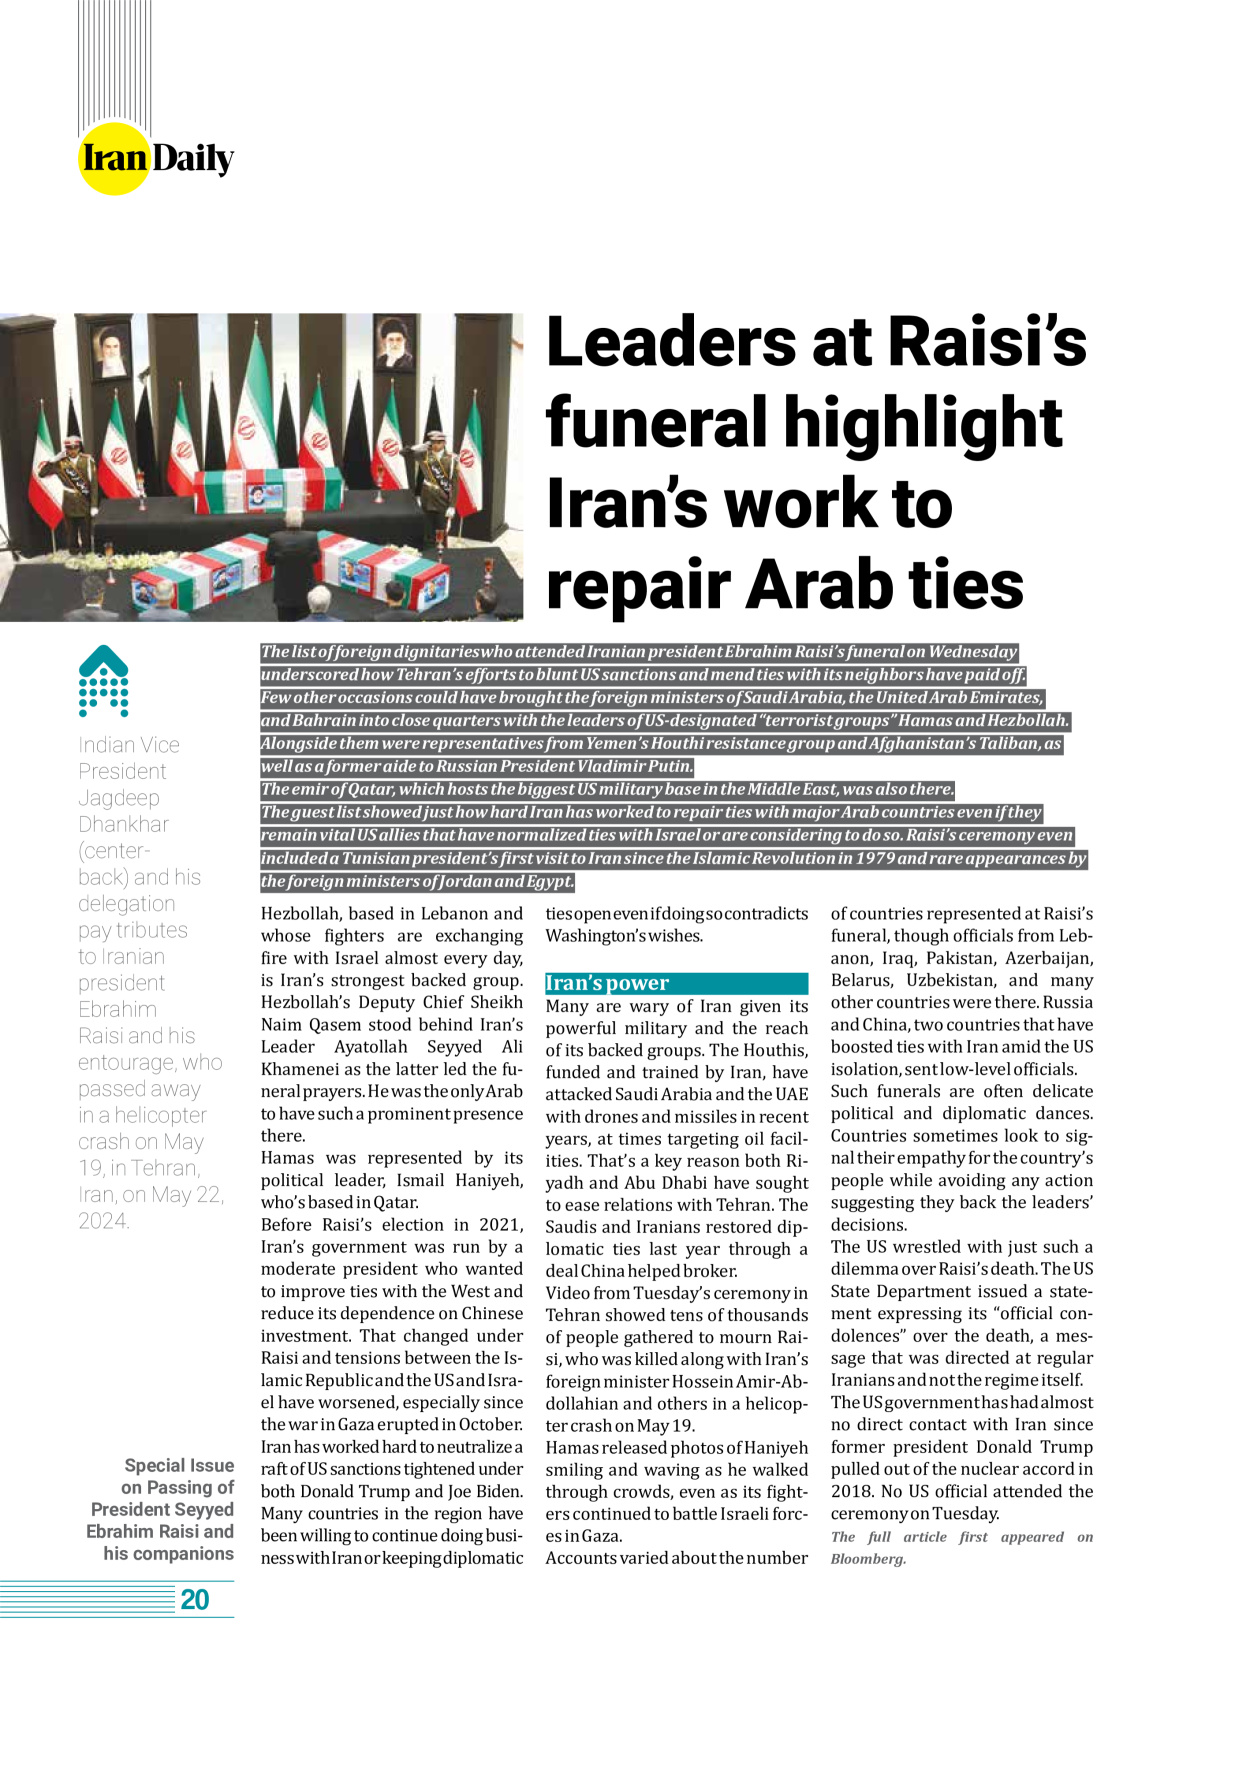 روزنامه ایران - ویژه نامه وِزه نامه چهلم شهید رییسی( انگلیسی) - ۱۷ تیر ۱۴۰۳ - صفحه ۲۰